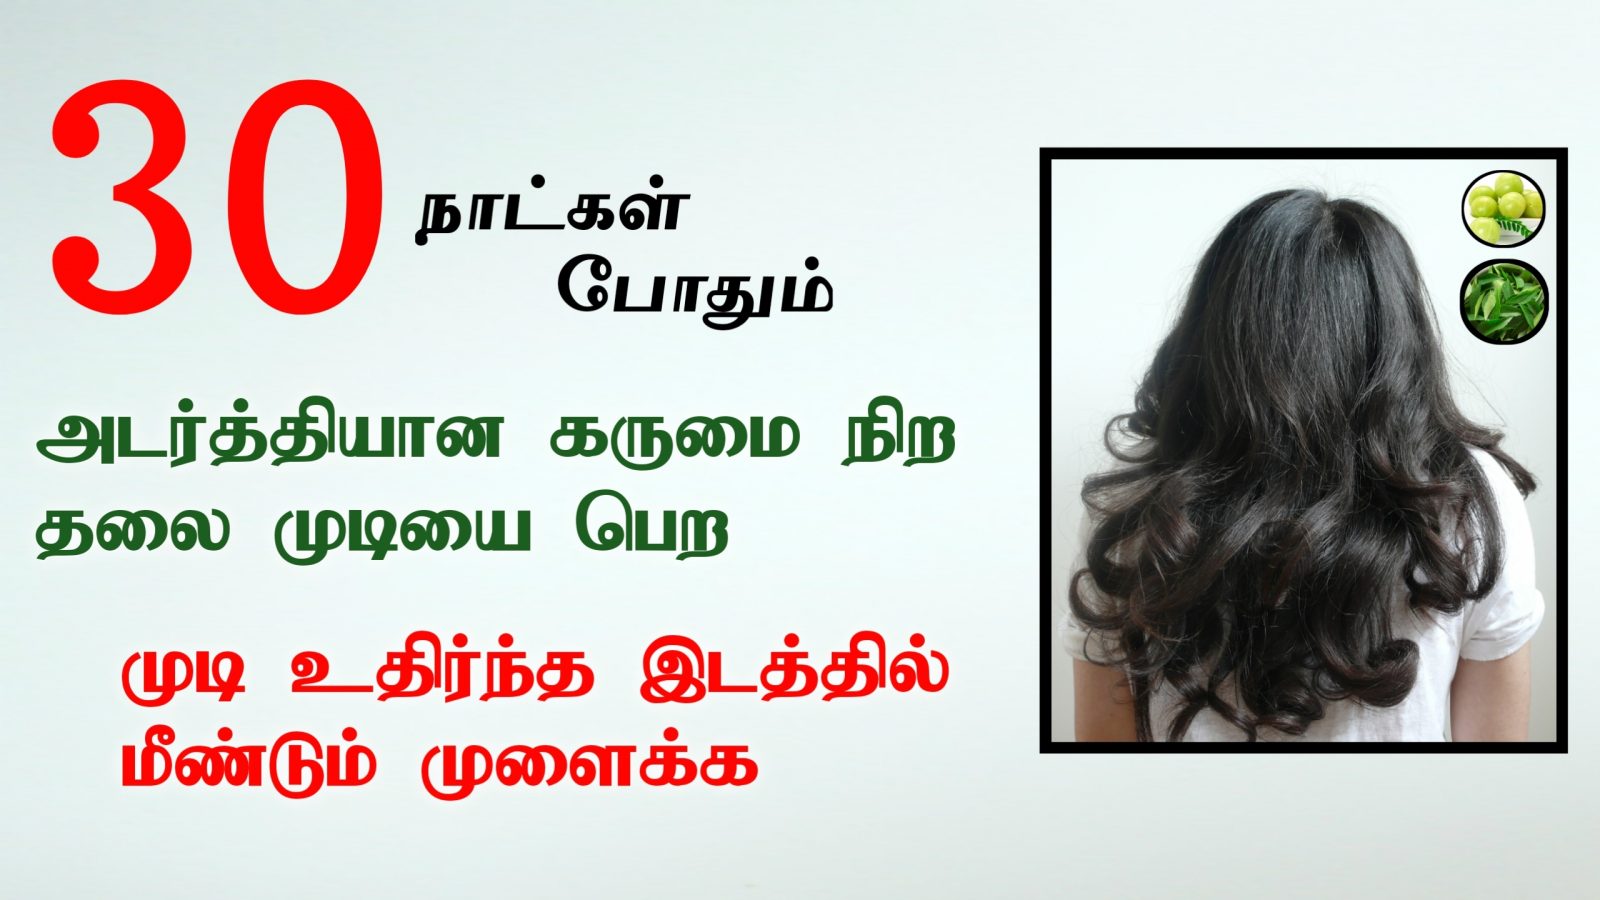 முடி கருமையாக அடர்த்தியாக வளர | முடி உதிர்த்த இடத்தில மீண்டும் வளர | Hair Growth Tips in Tamil